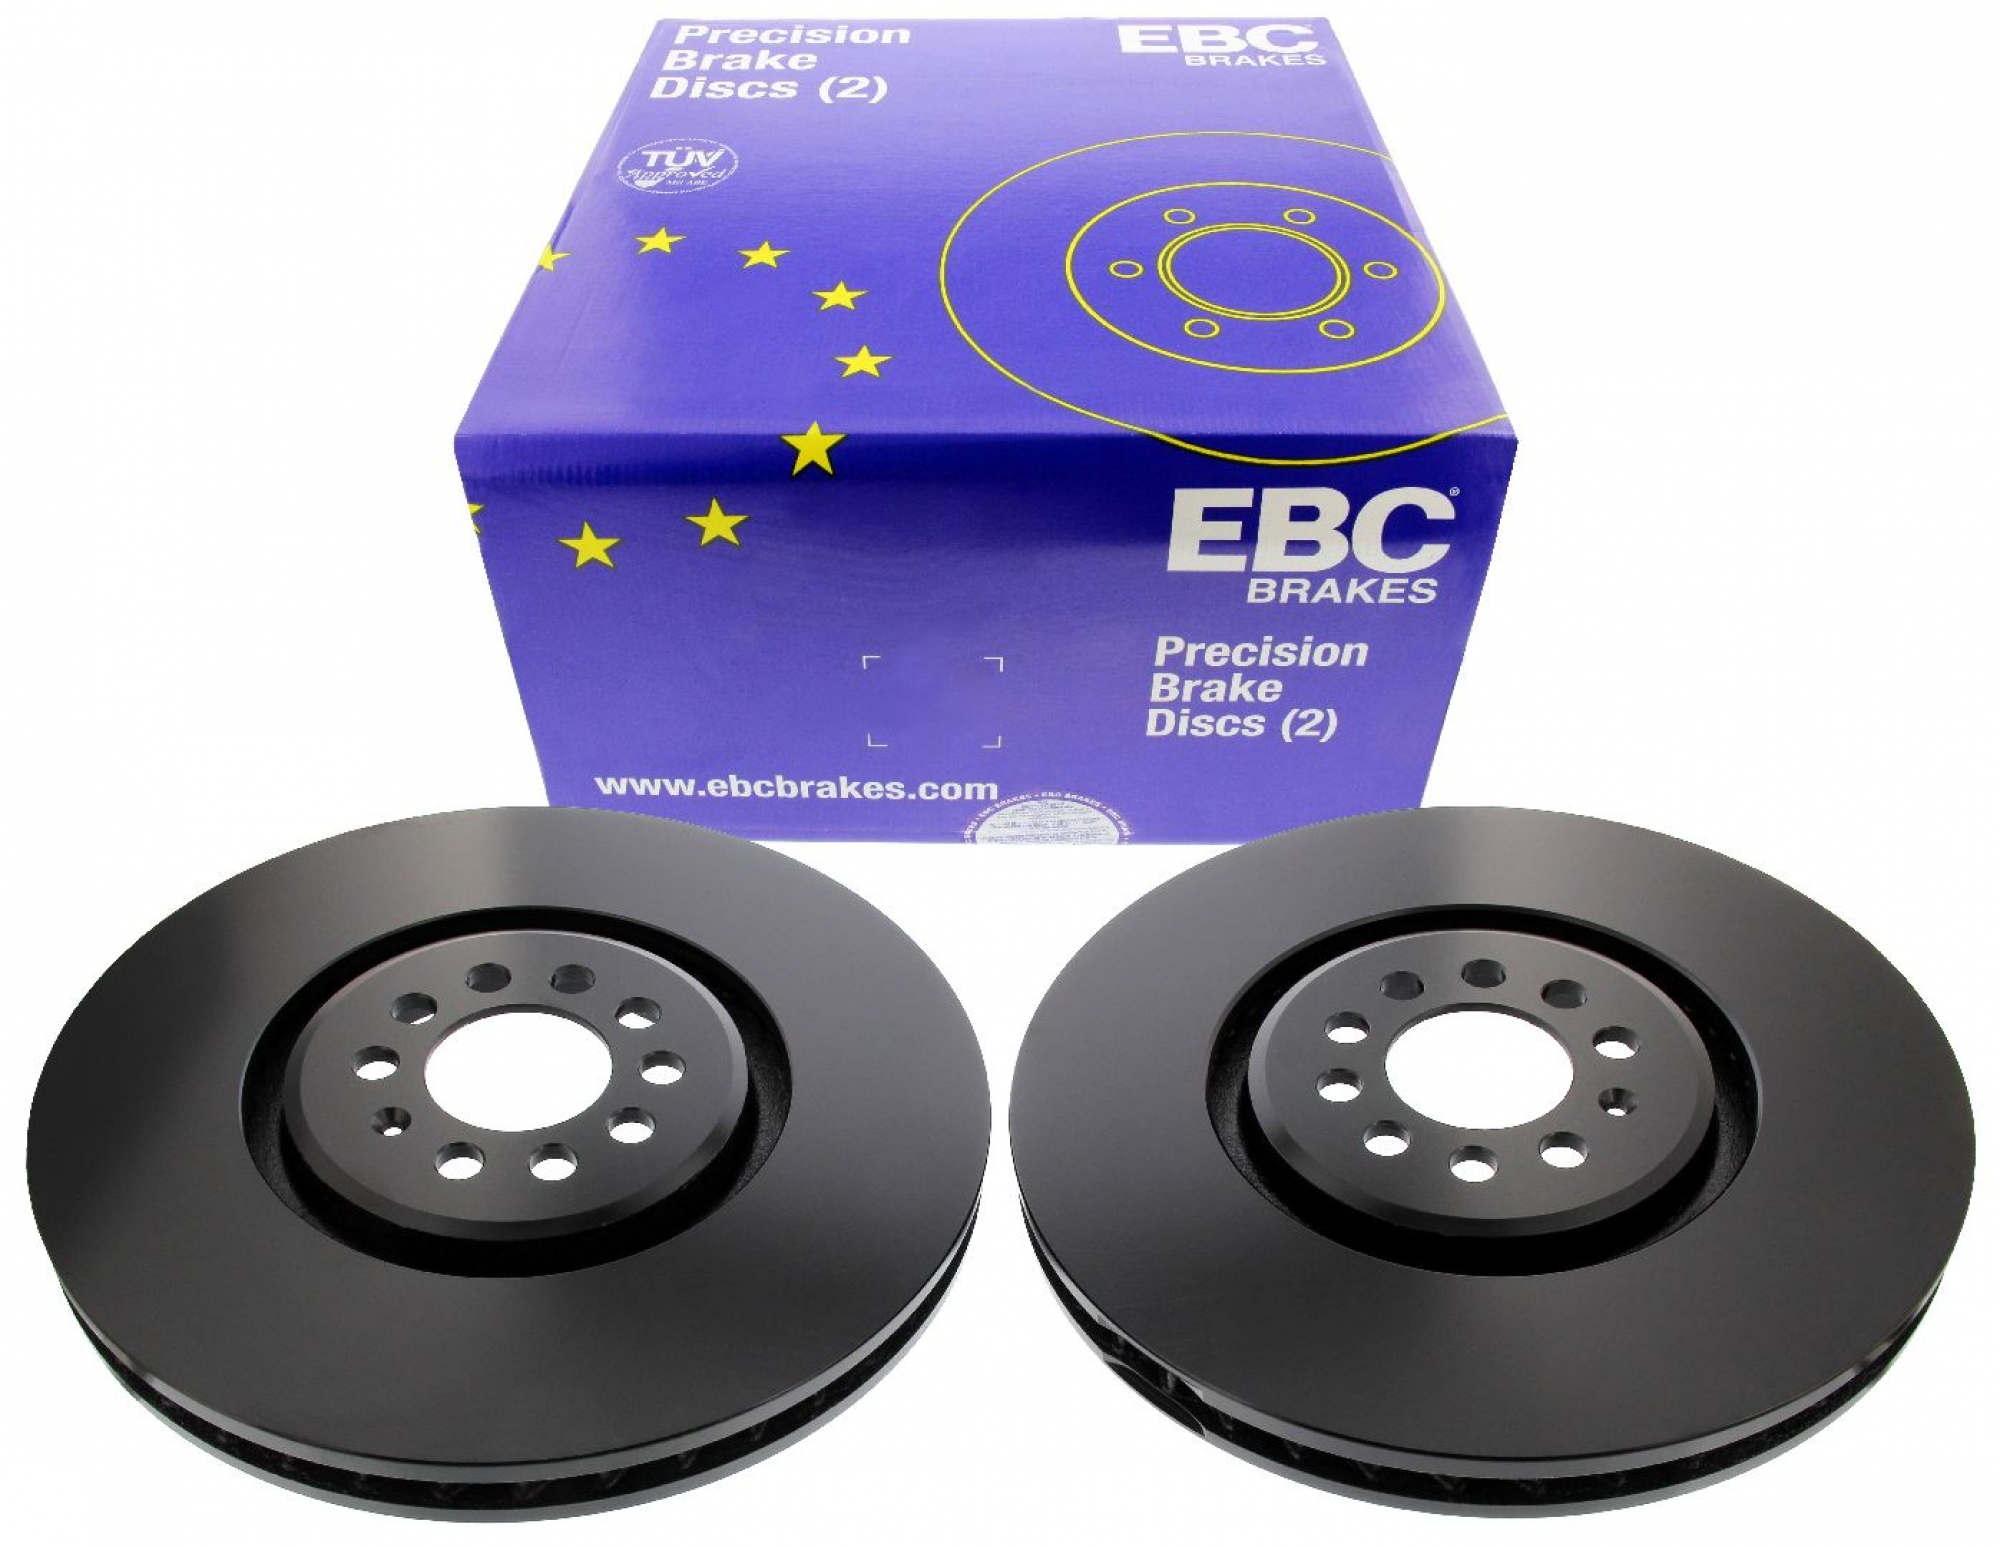 EBC-Bremsscheiben, Premium Sportbremsscheiben, 2-teilig, VA, VW Golf 4 R32, Ø 334 mm